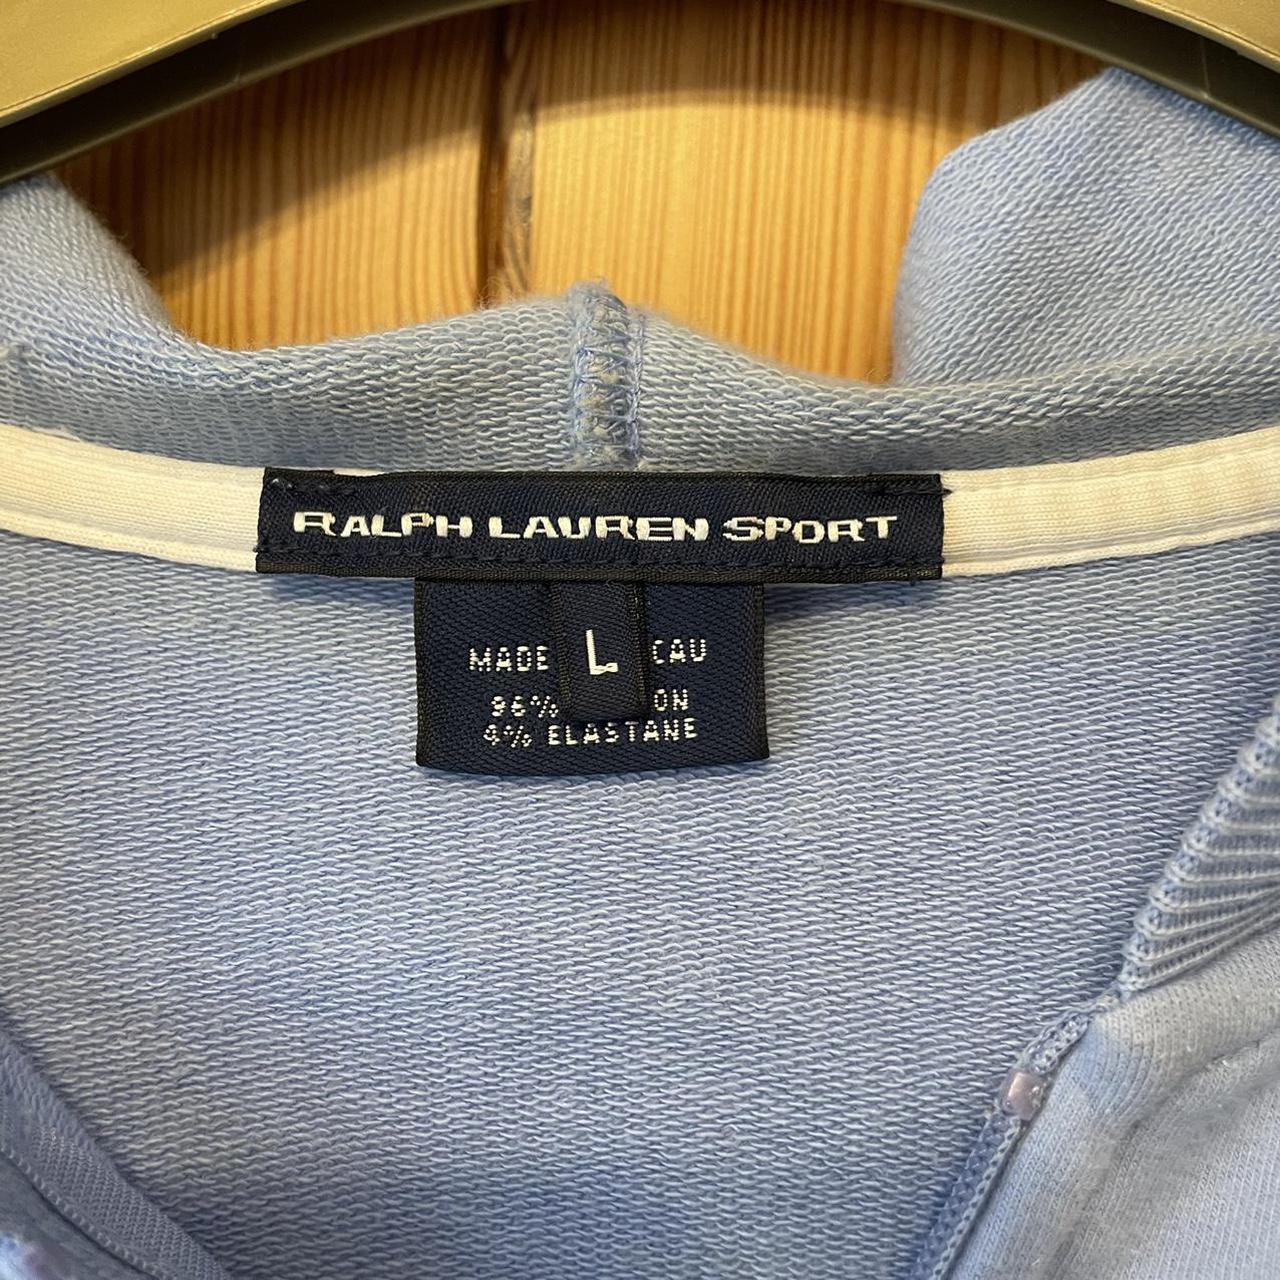 Ralph Lauren zip up hoodie, baby blue with white... - Depop